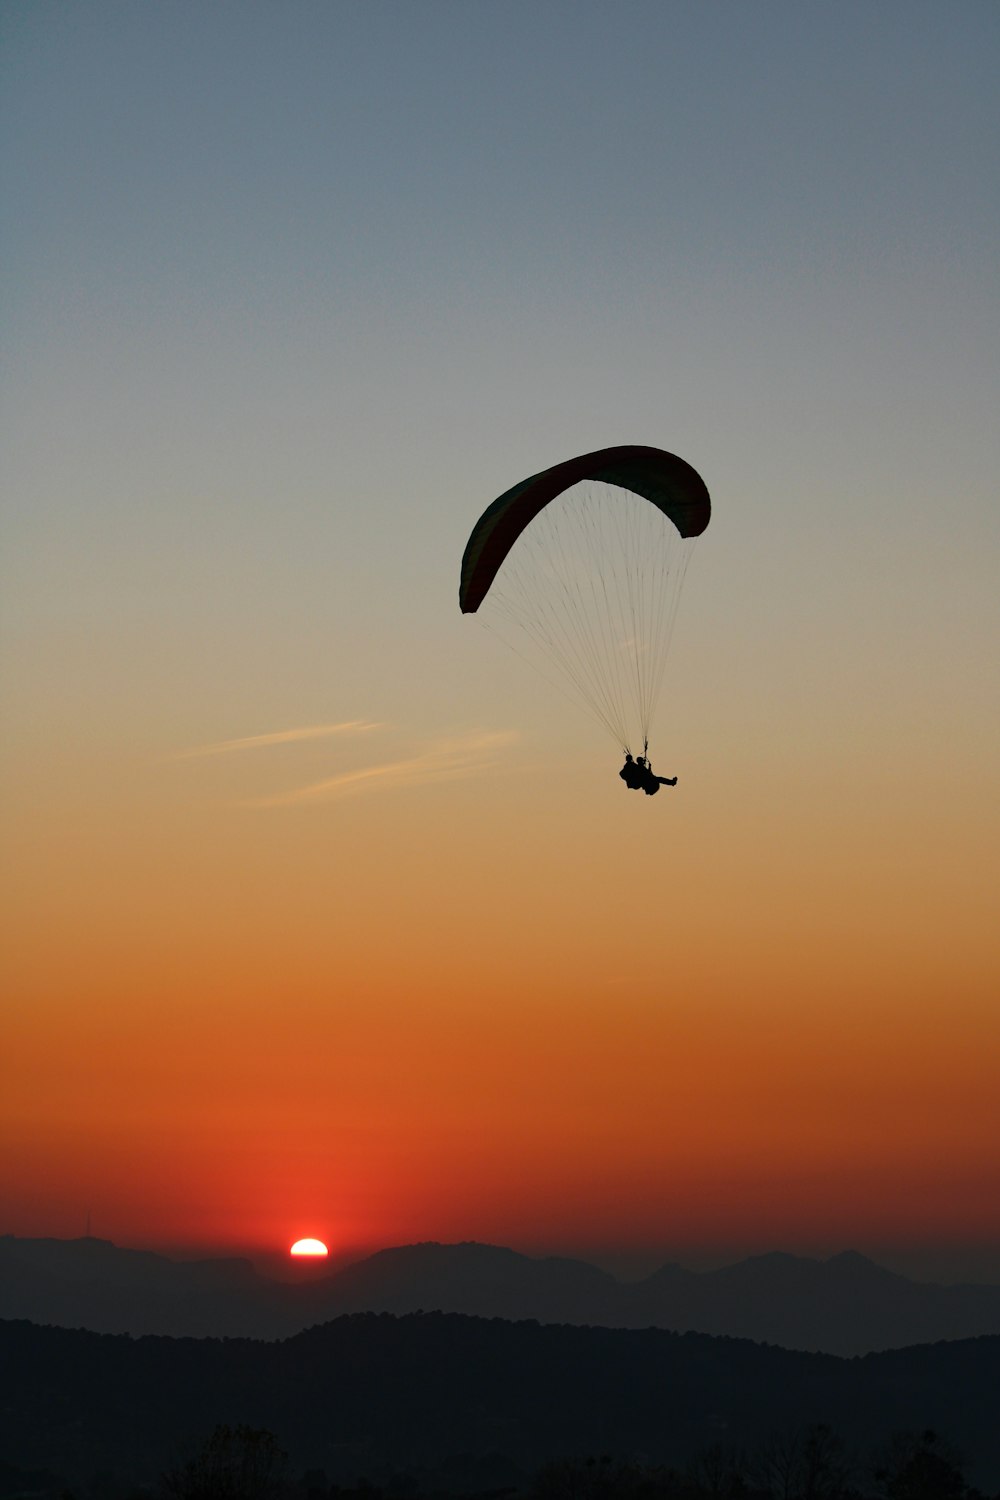 Silueta de la persona que monta el paracaídas durante la puesta del sol